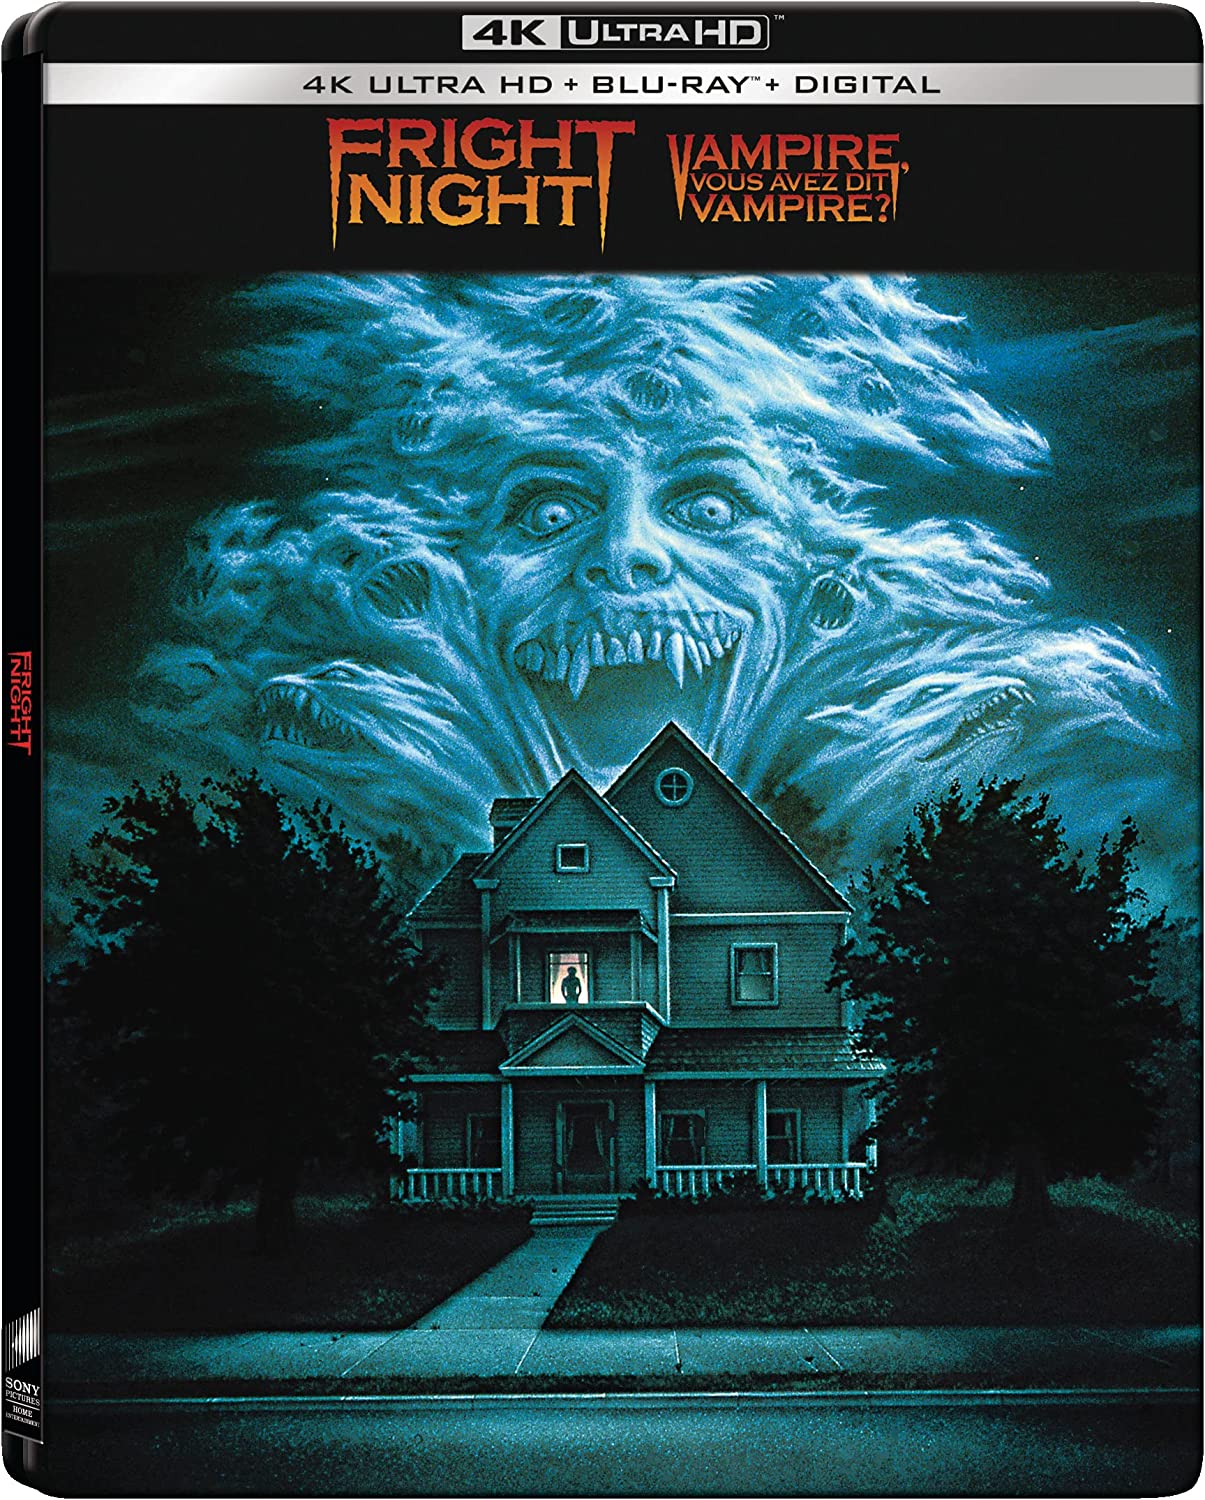 Fright Night 1985 SB BIL front.jpg